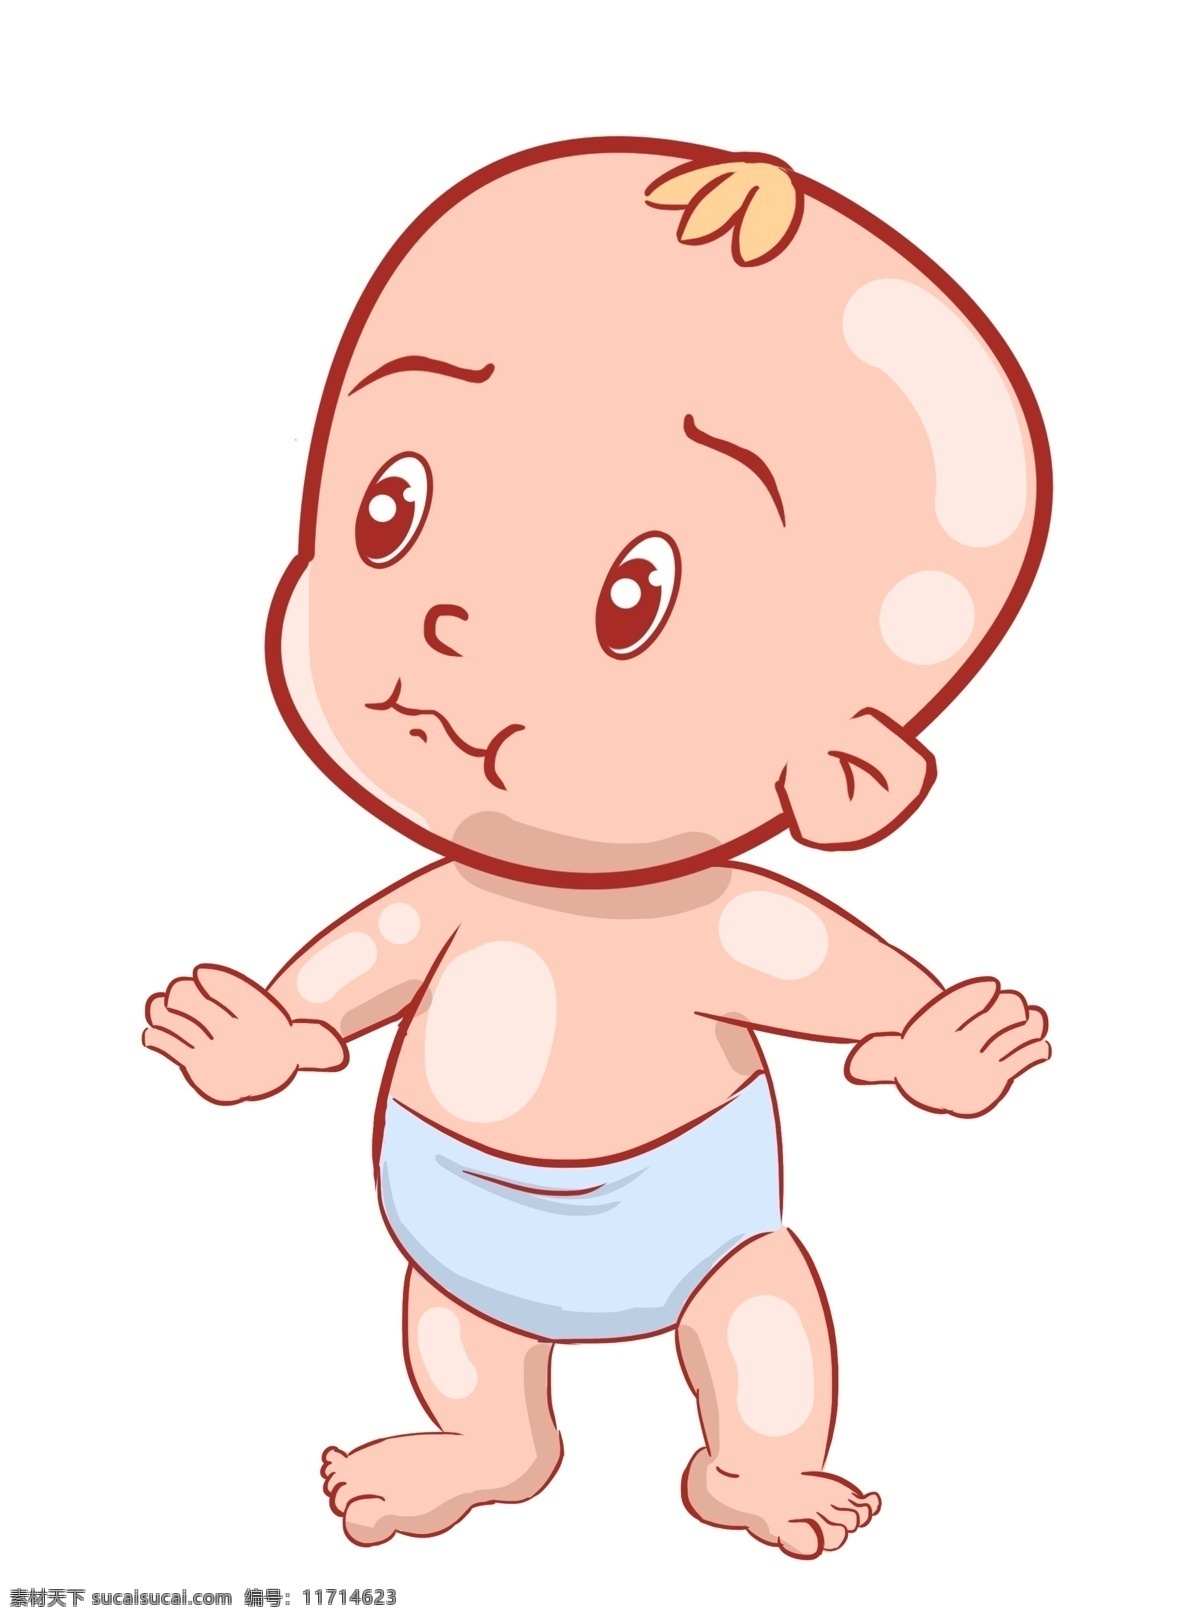 哭泣 婴儿 装饰 插画 哭泣的婴儿 可爱的婴儿 漂亮的婴儿 婴儿装饰 婴儿插画 立体婴儿 委屈婴儿